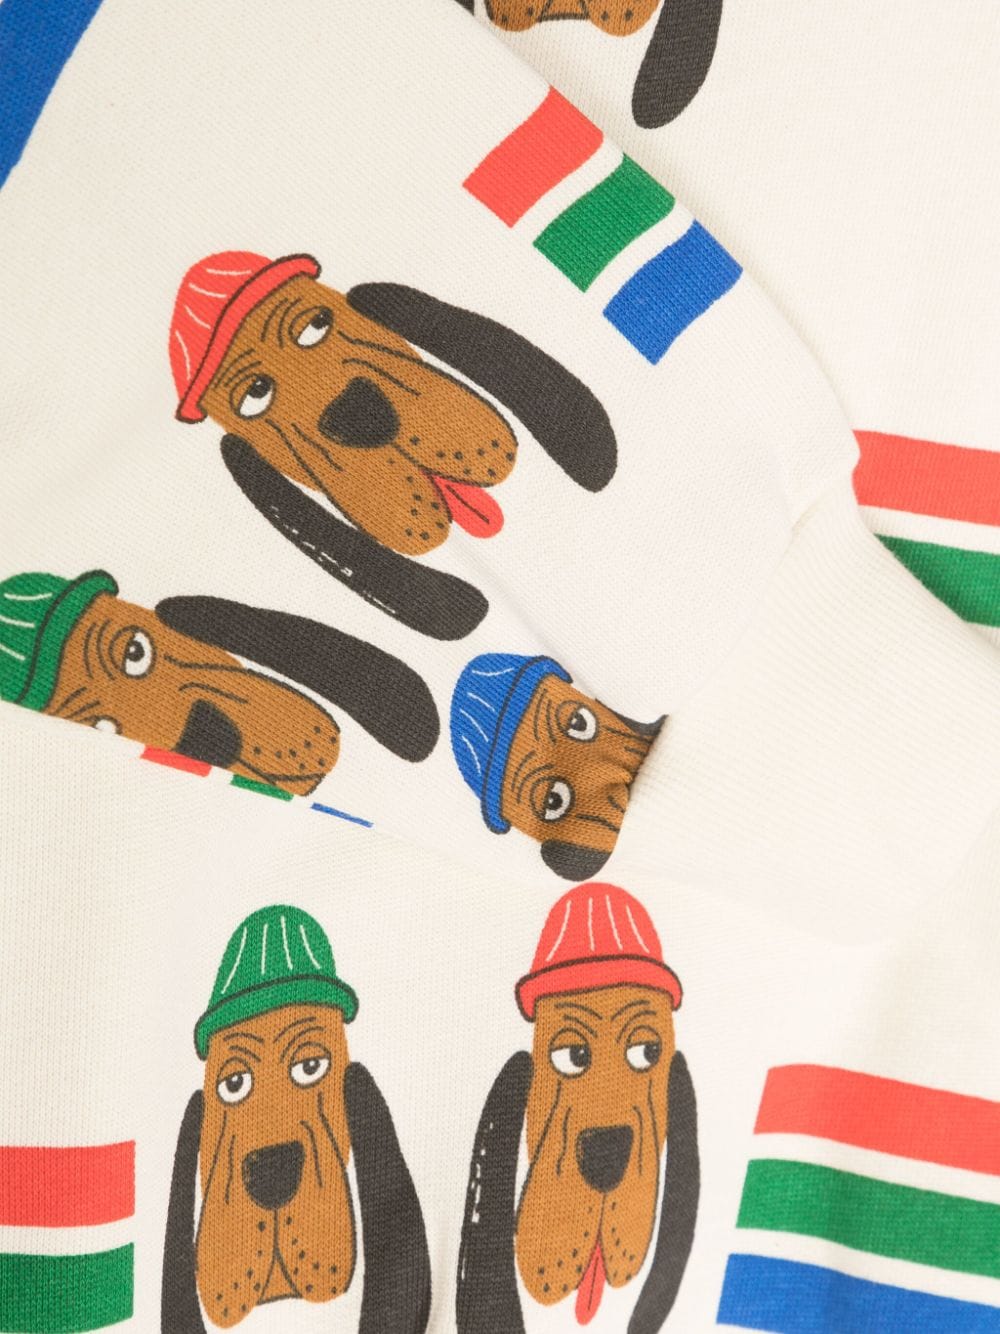 Bloodhound Print Sweatshirt